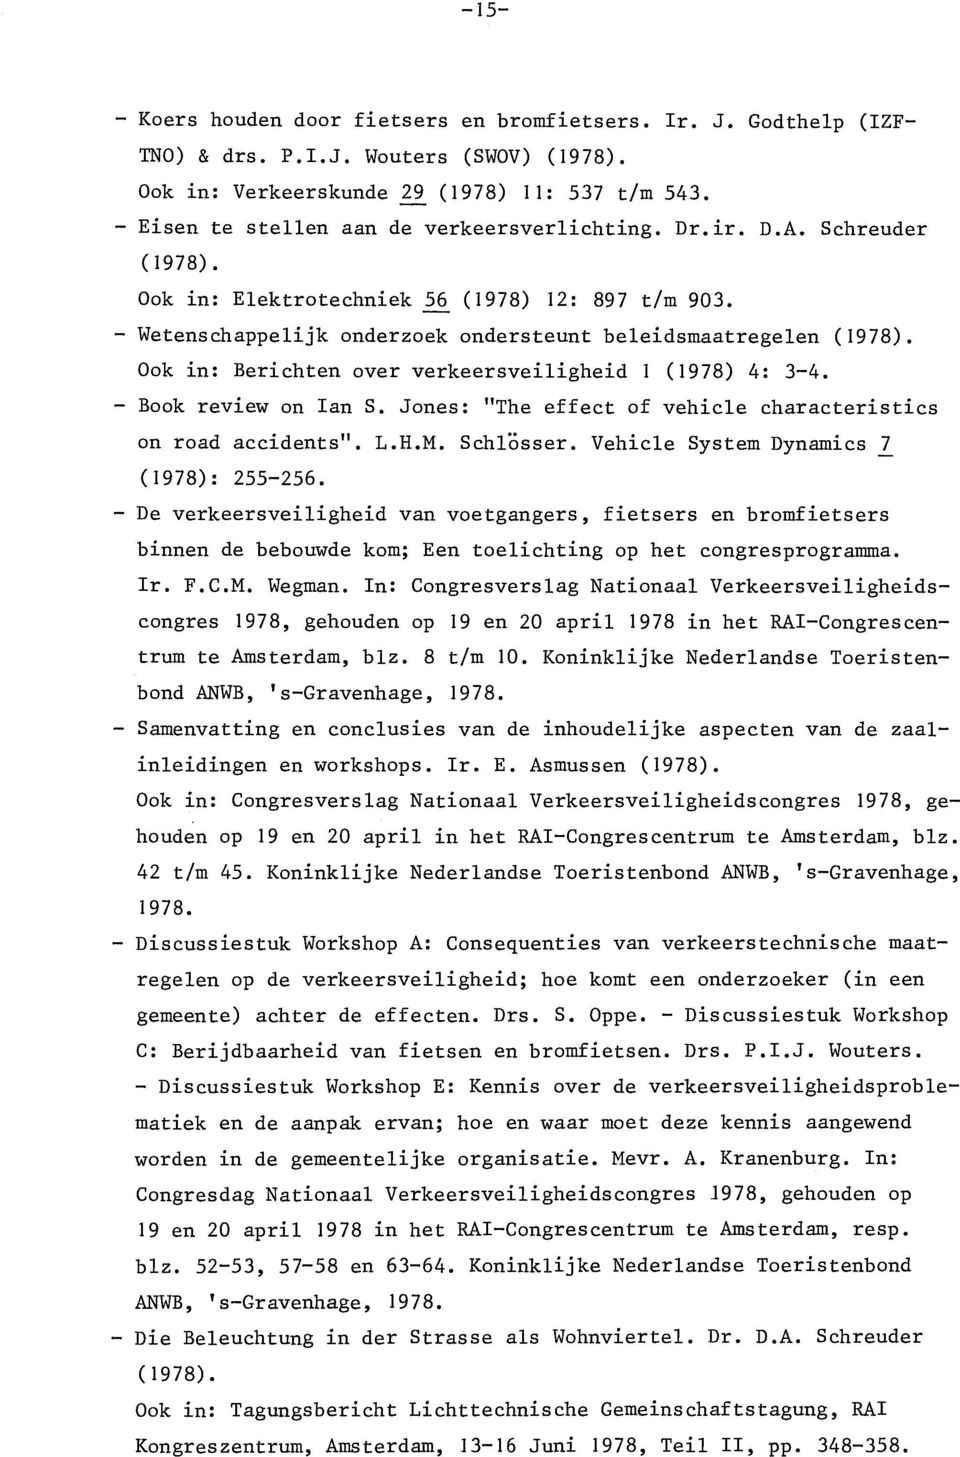 Ook in: Berichten over verkeersveiligheid I (1978) 4: 3-4. - Book review on lan S. Jones: "The effect of vehicle characteristics on road accidents". L.R.M. Schlösser.